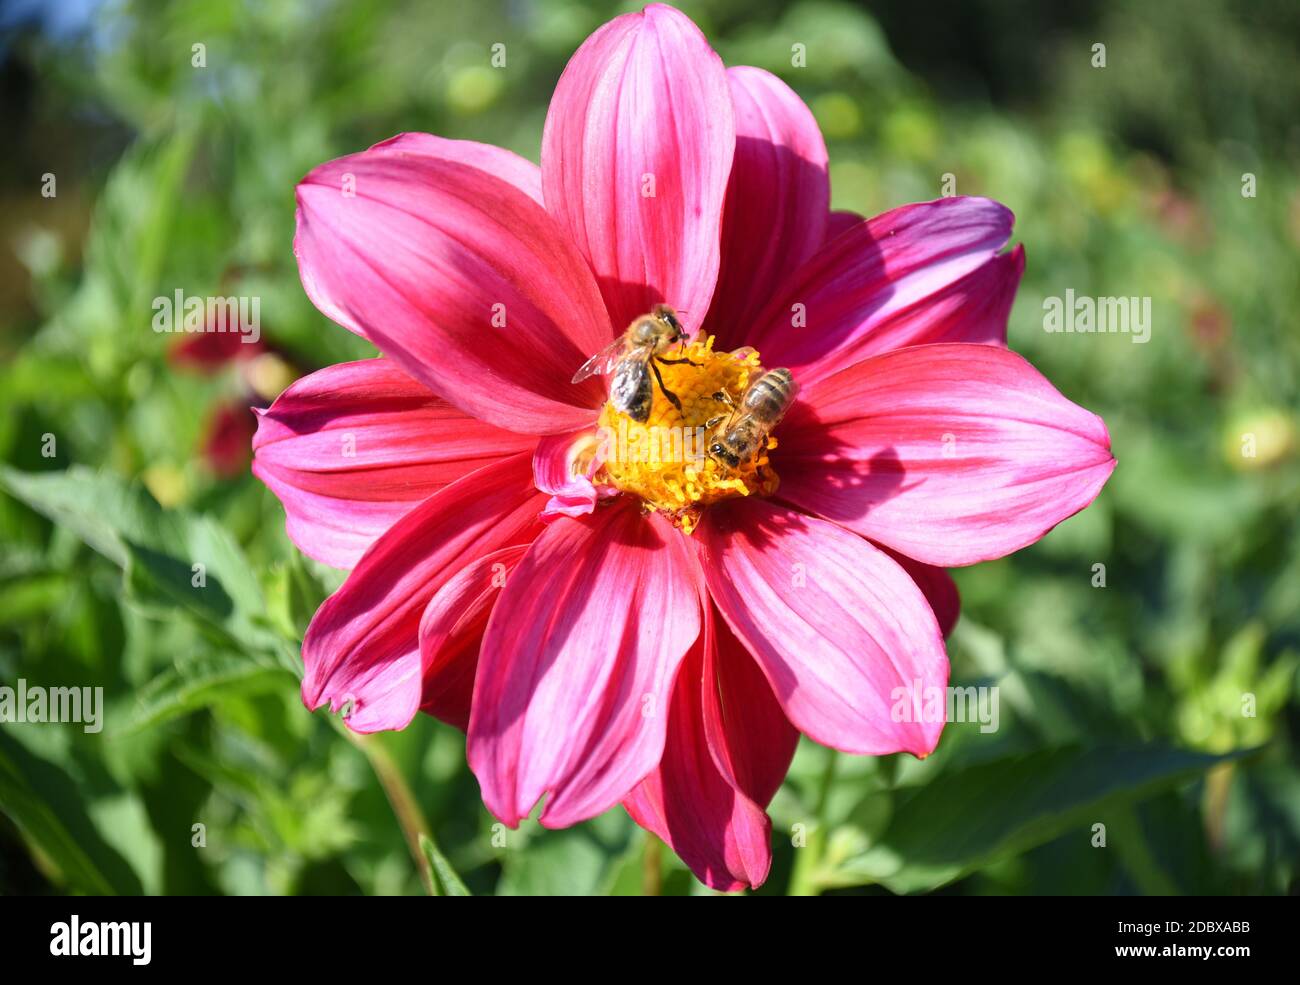 Leuchtend rosa Dahlia Blume mit zwei Bienen bestäuben sie. Russischer Ferner Osten, Herbst Stockfoto